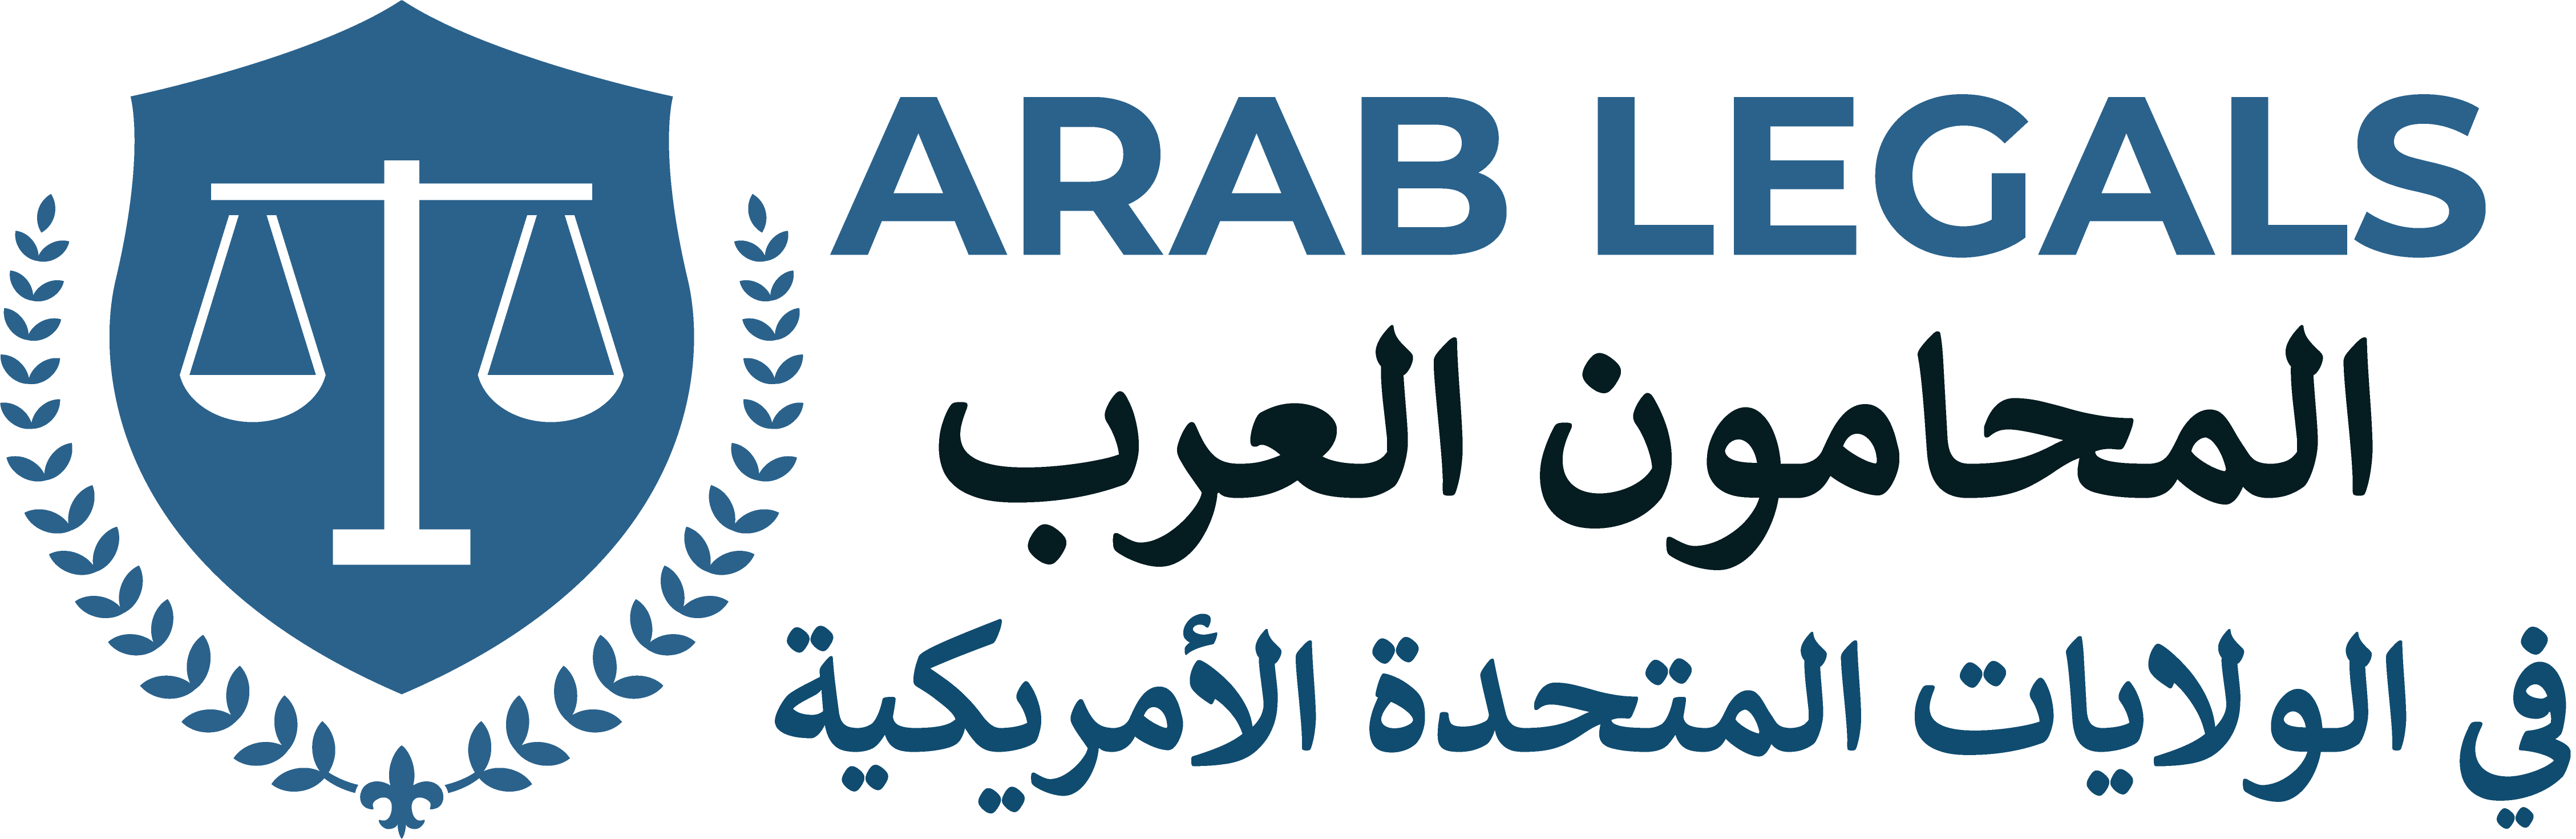 Arab Legals